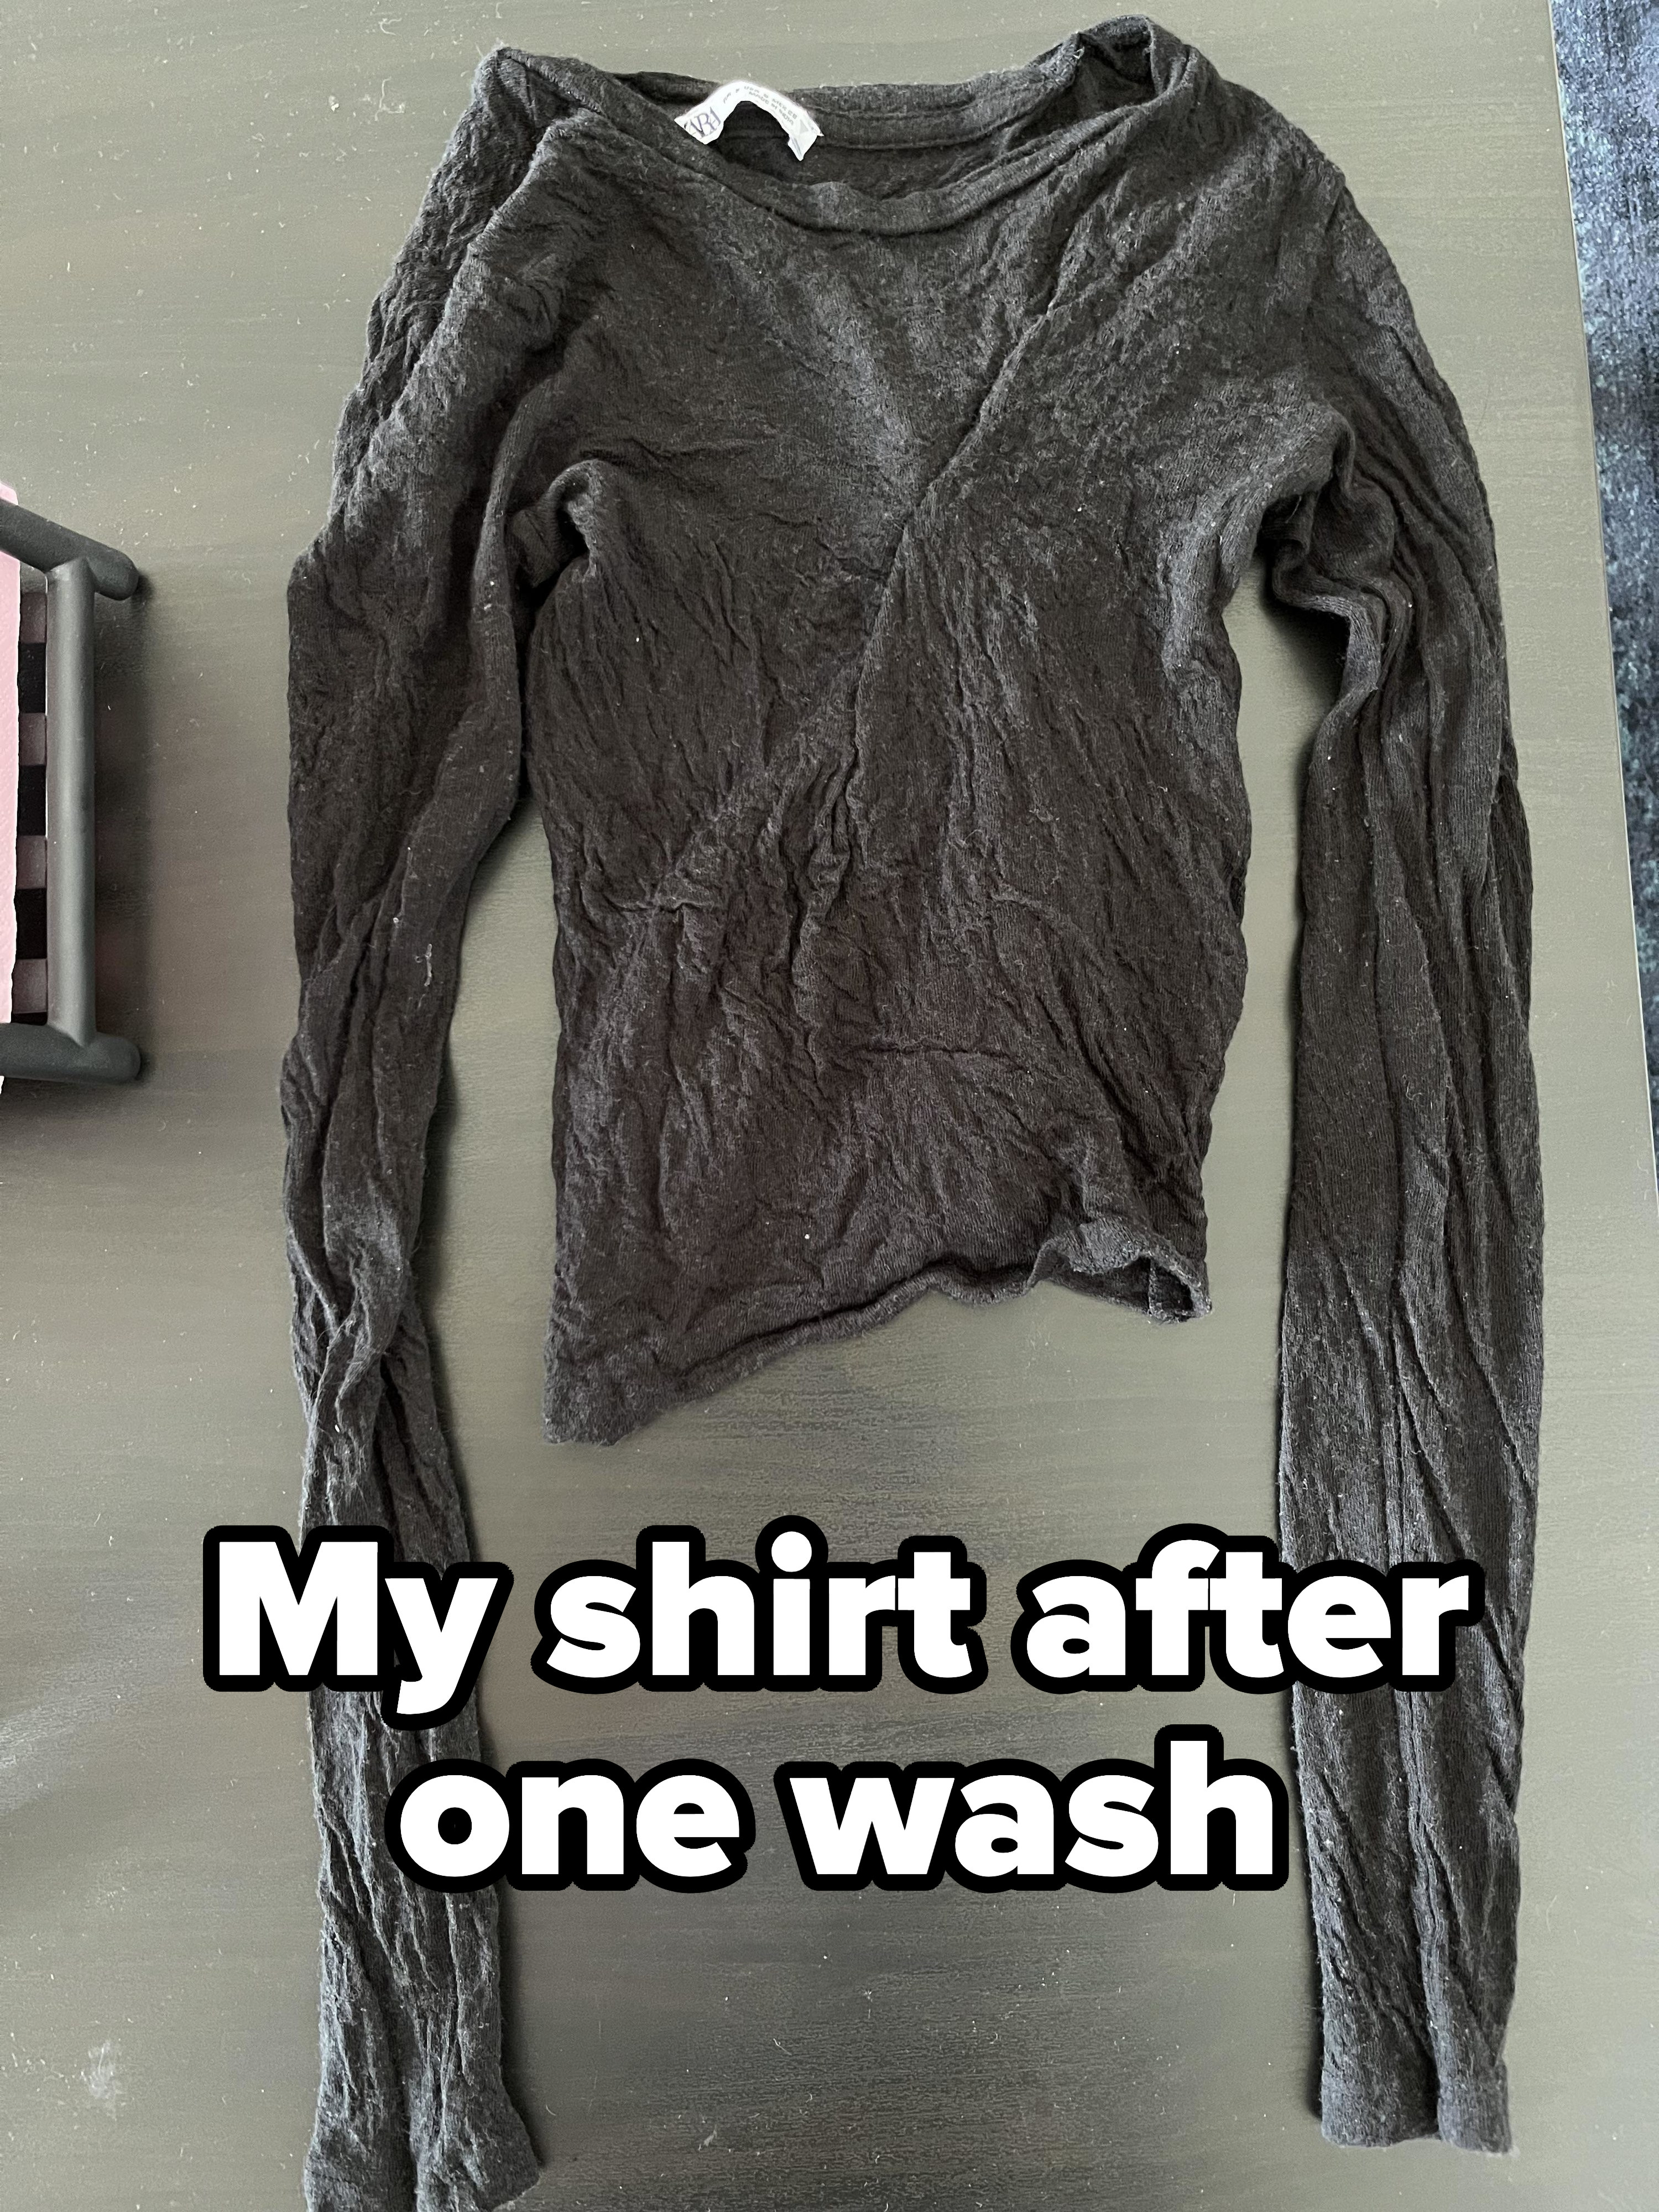 A shrunken shirt after one wash